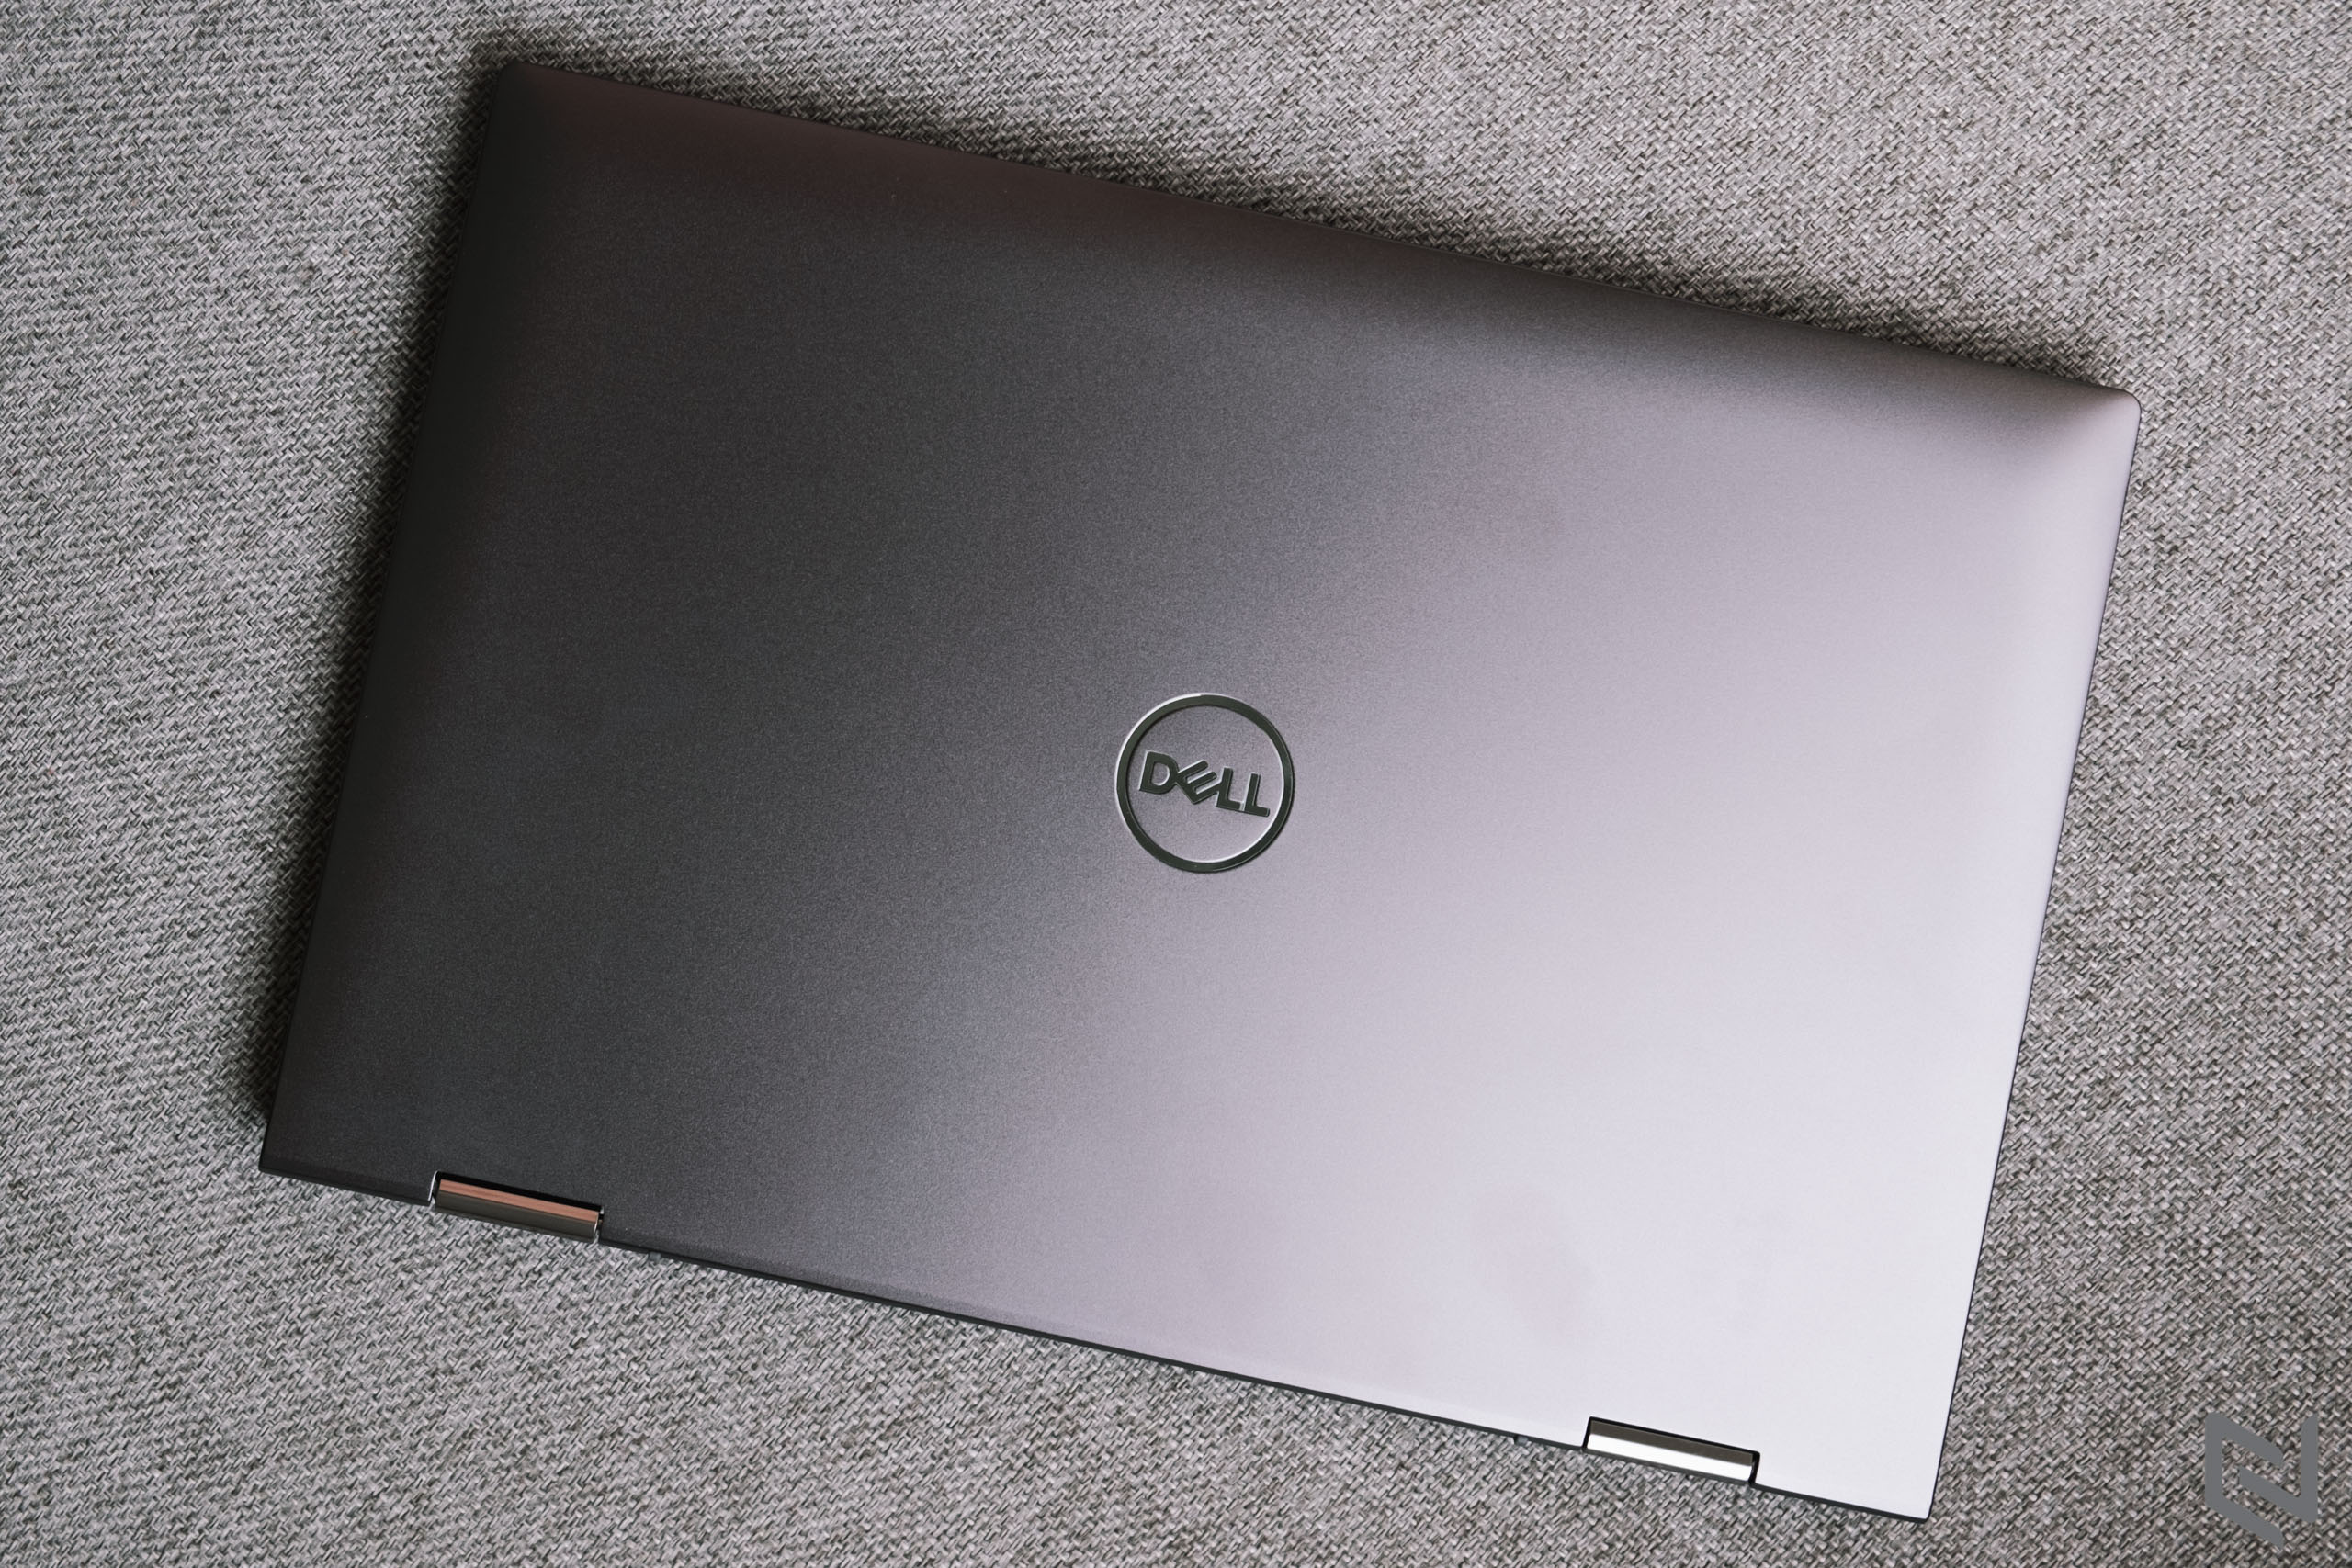 Trải nghiệm laptop Dell Inspiron 13 7306 2 in 1: Màn hình đẹp, chạy Intel thế hệ 11, đạt chuẩn Intel EVO